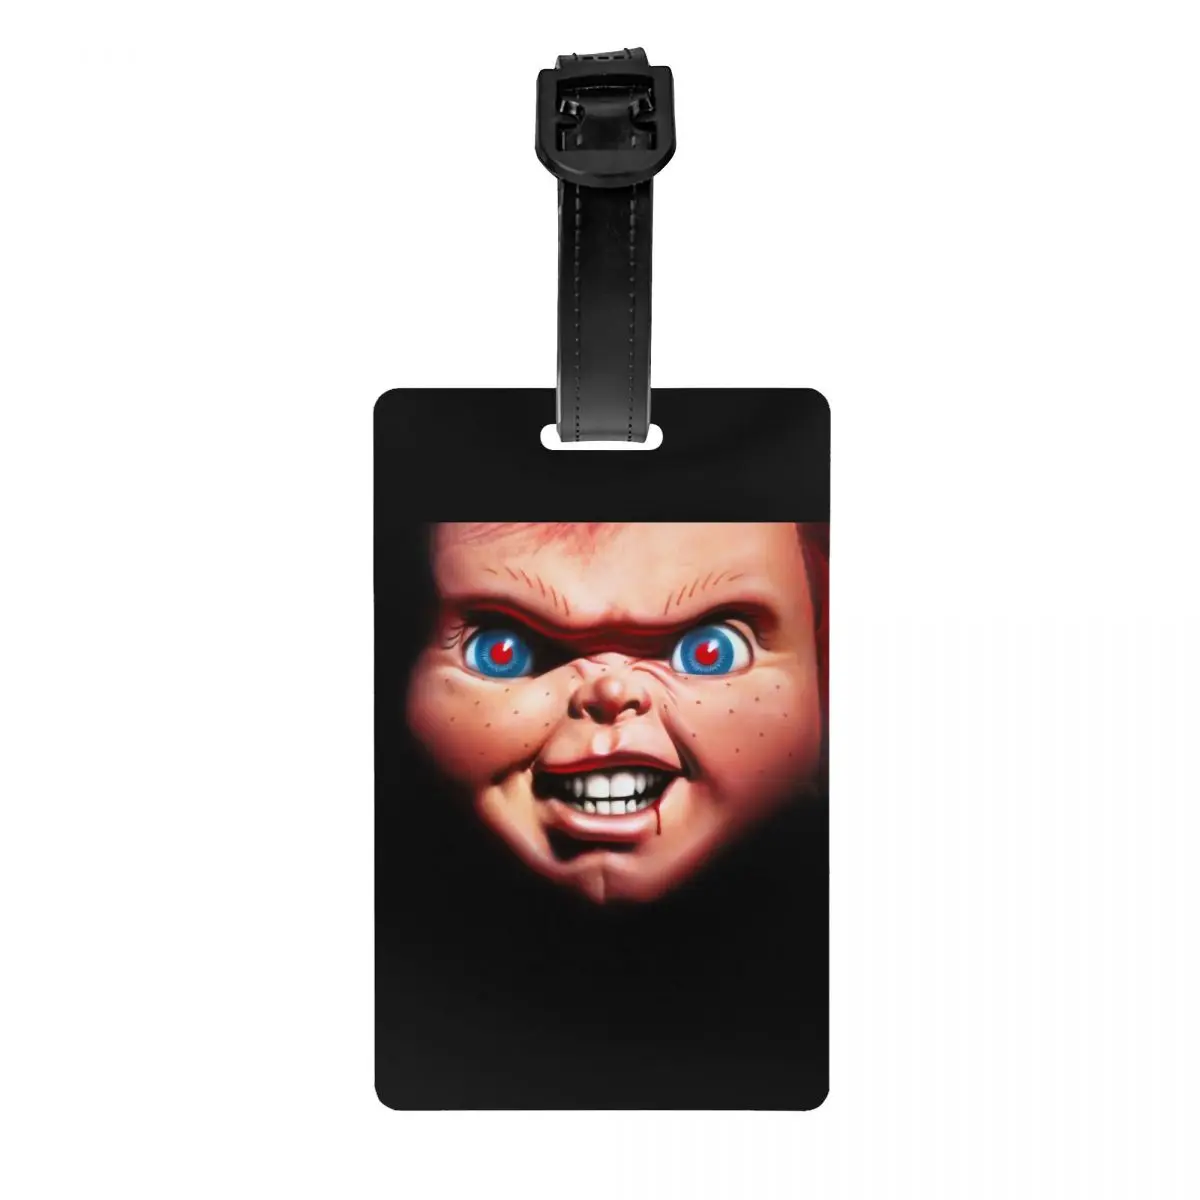 

Страшный убийца Чаки багажная бирка детская игра фильм дорожная сумка чемодан Крышка для личной безопасности идентификационная этикетка